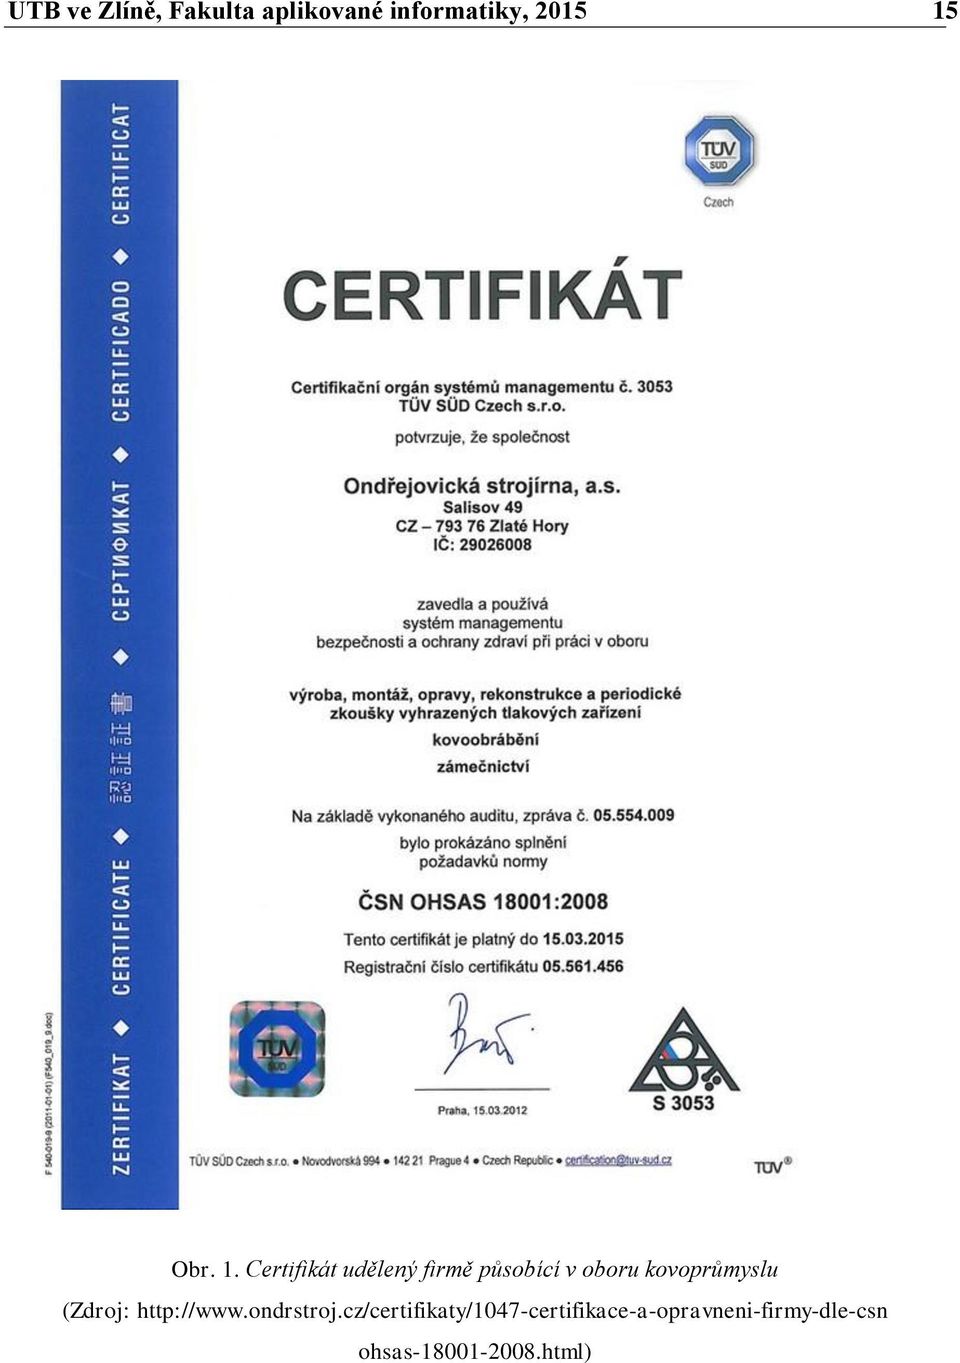 Certifikát udělený firmě působící v oboru kovoprůmyslu